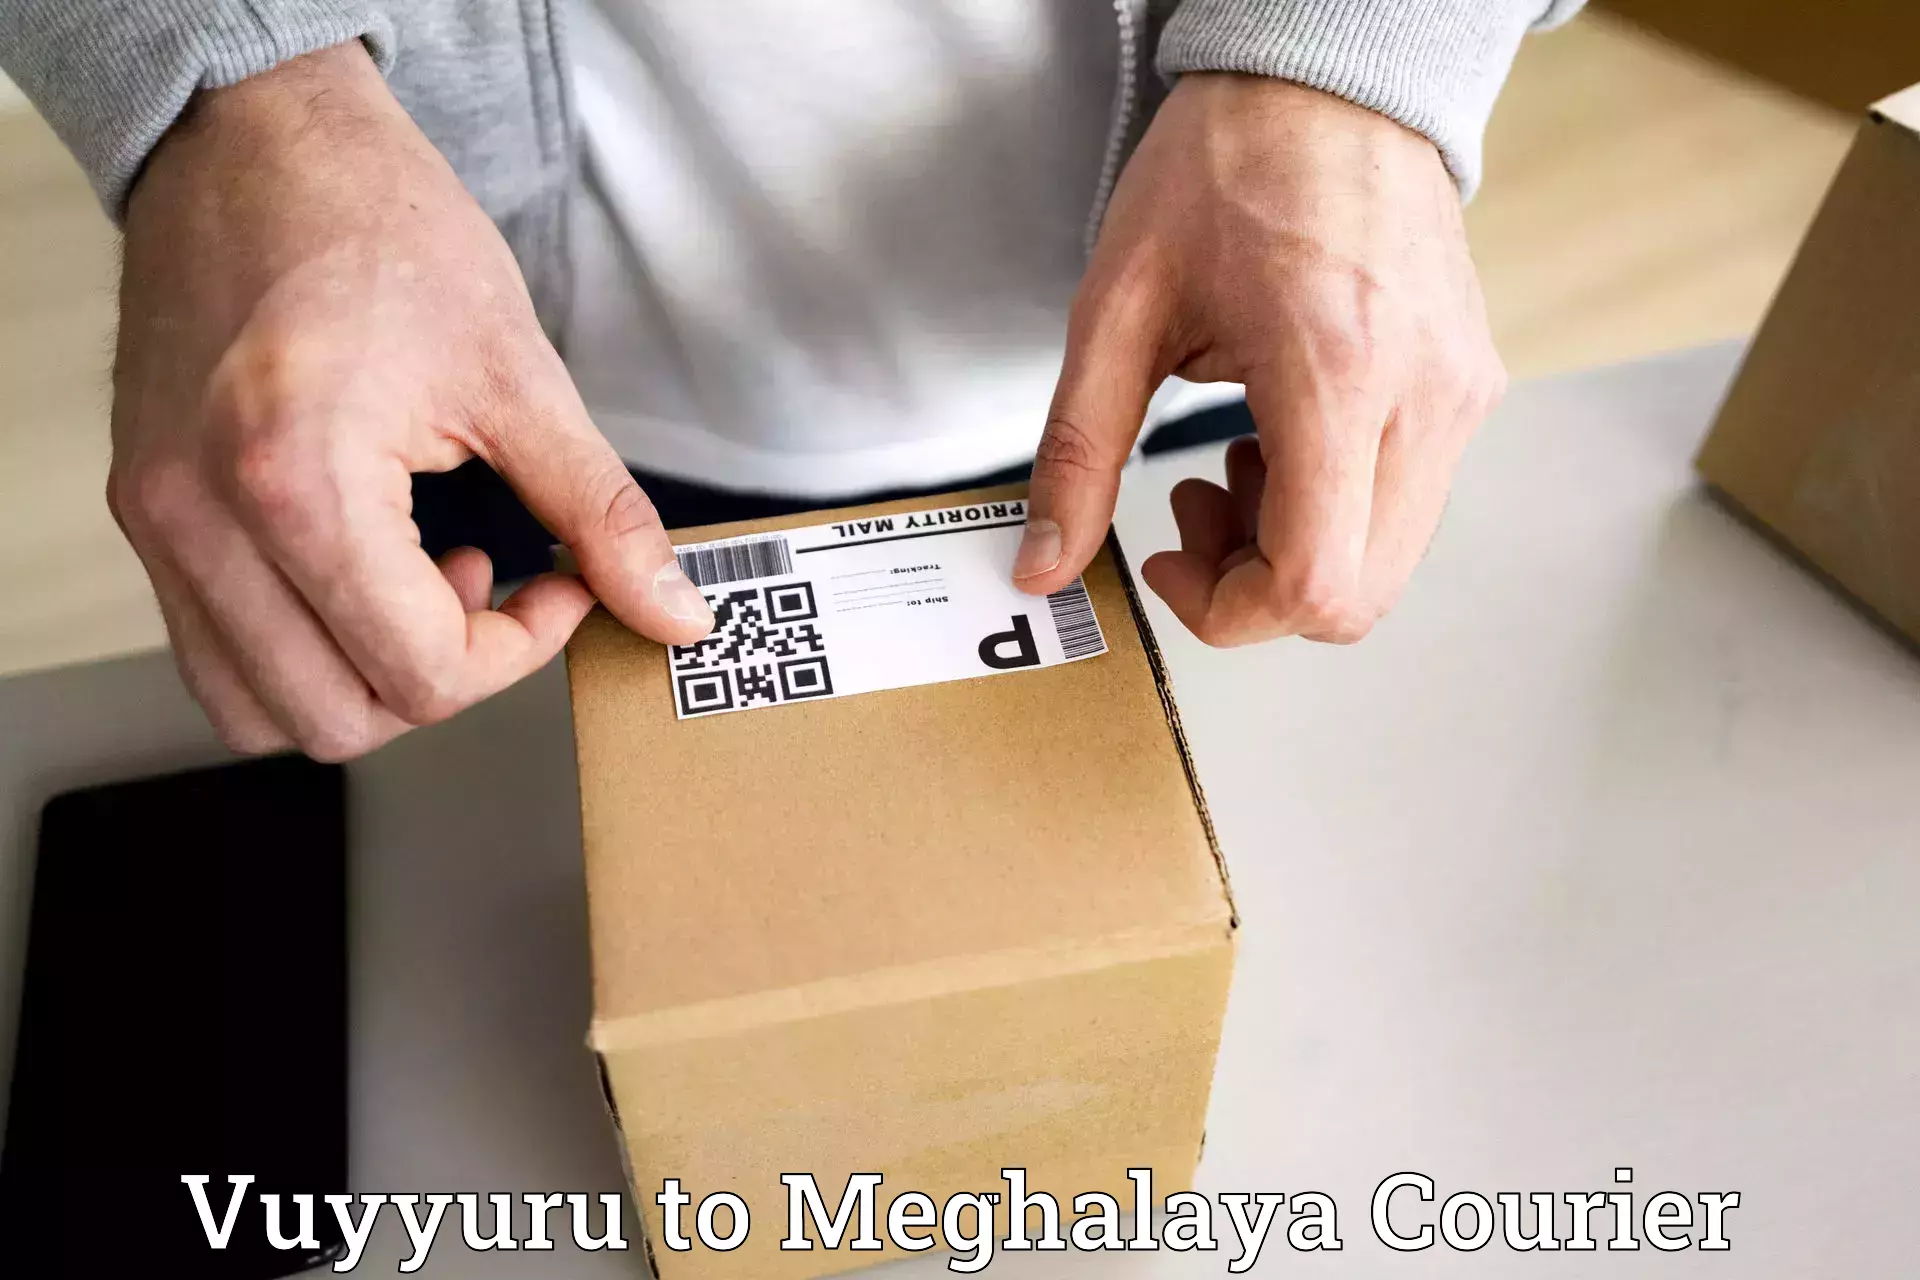 Business delivery service Vuyyuru to Meghalaya